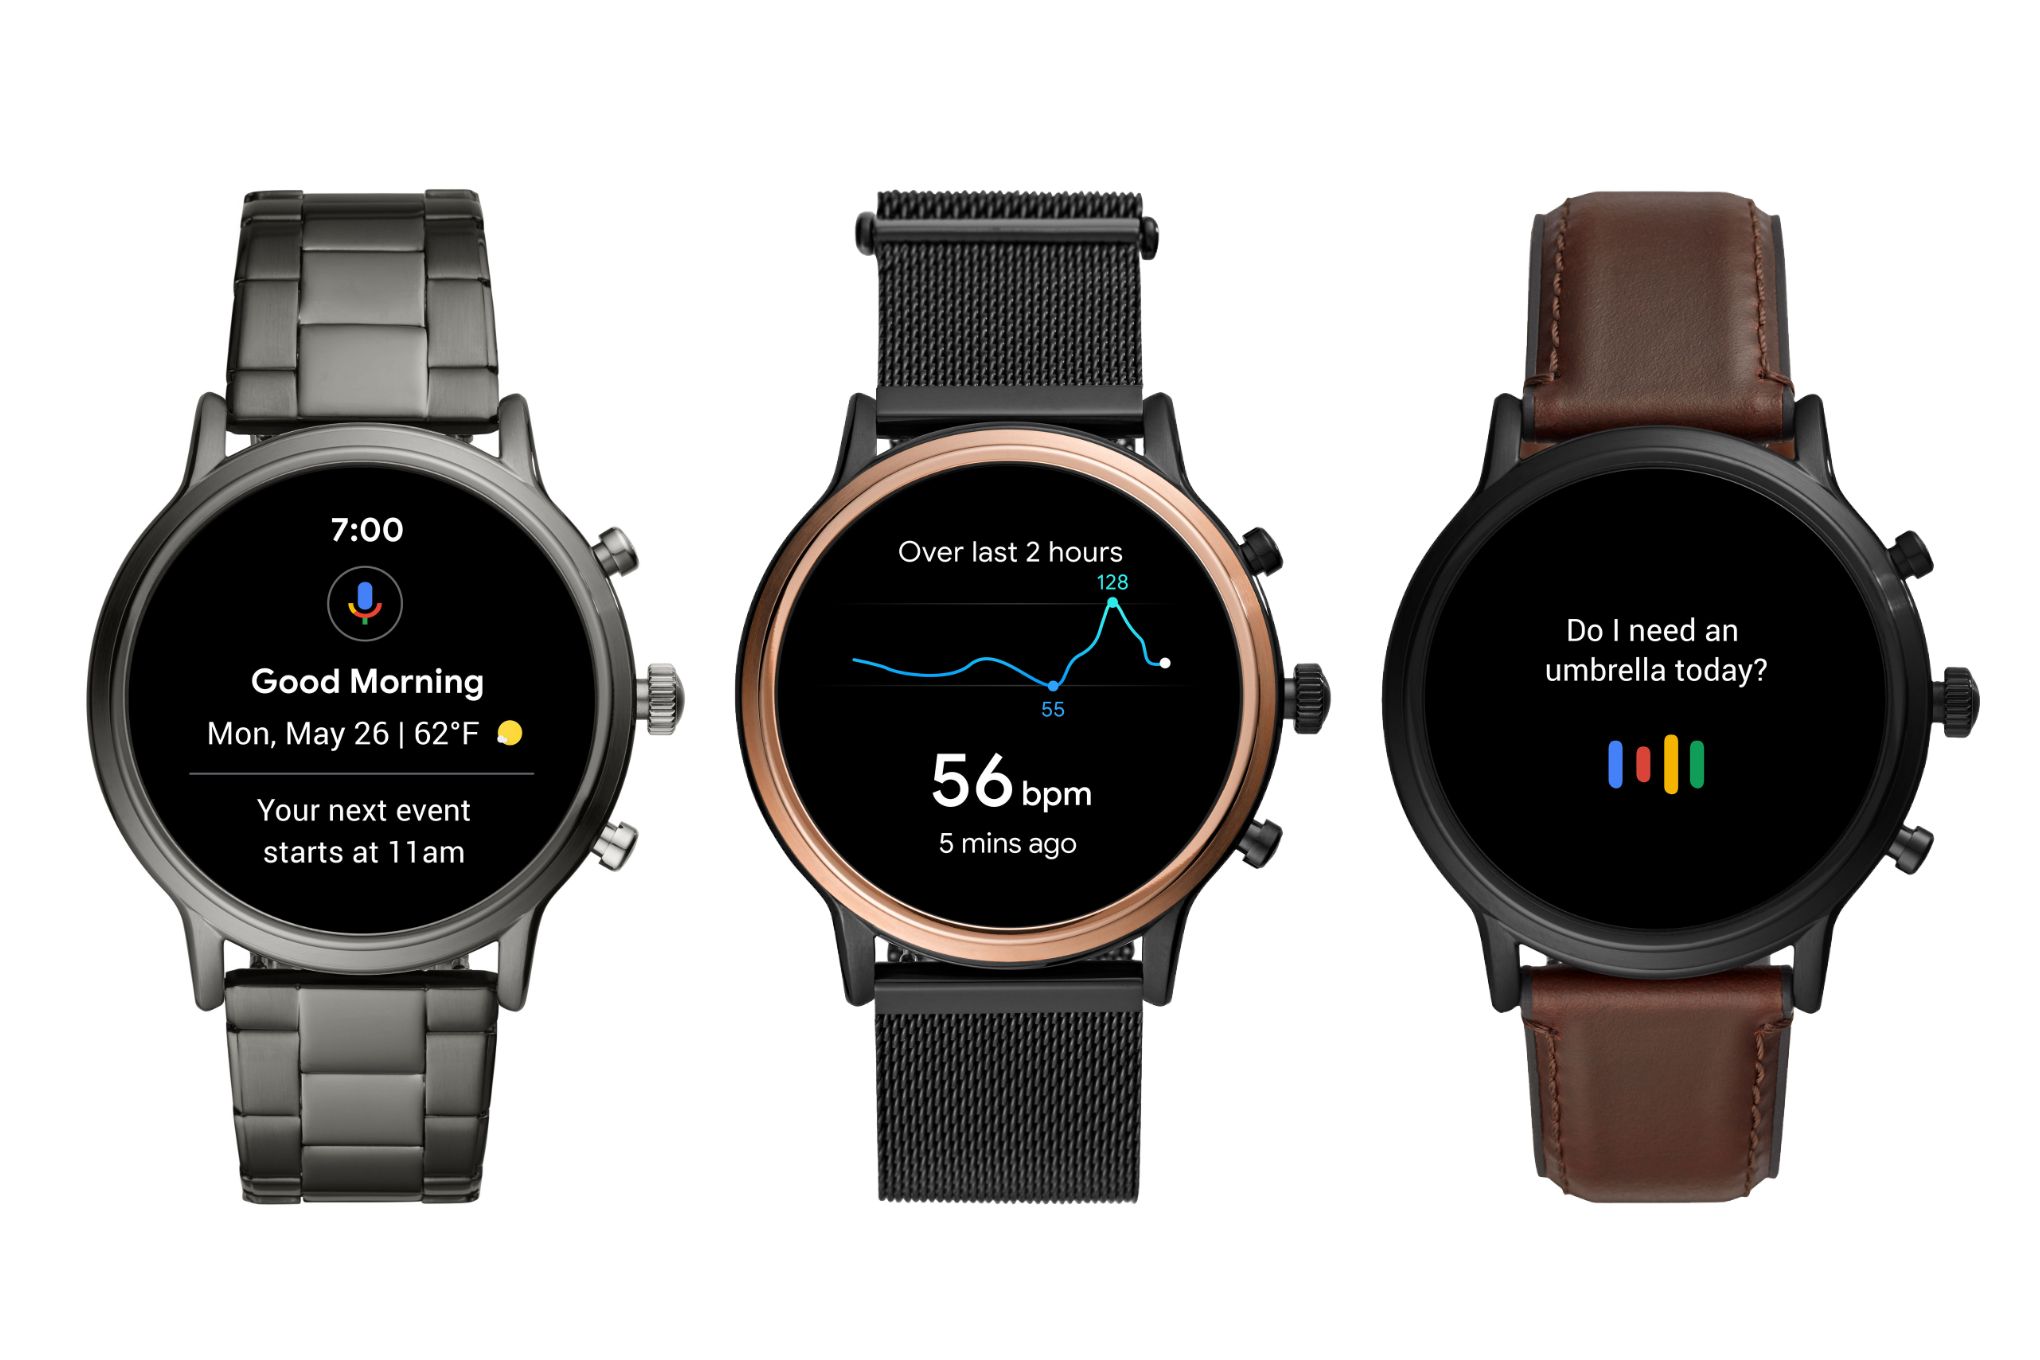 Fossil anuncia dos nuevos smartwatches con Android Wear